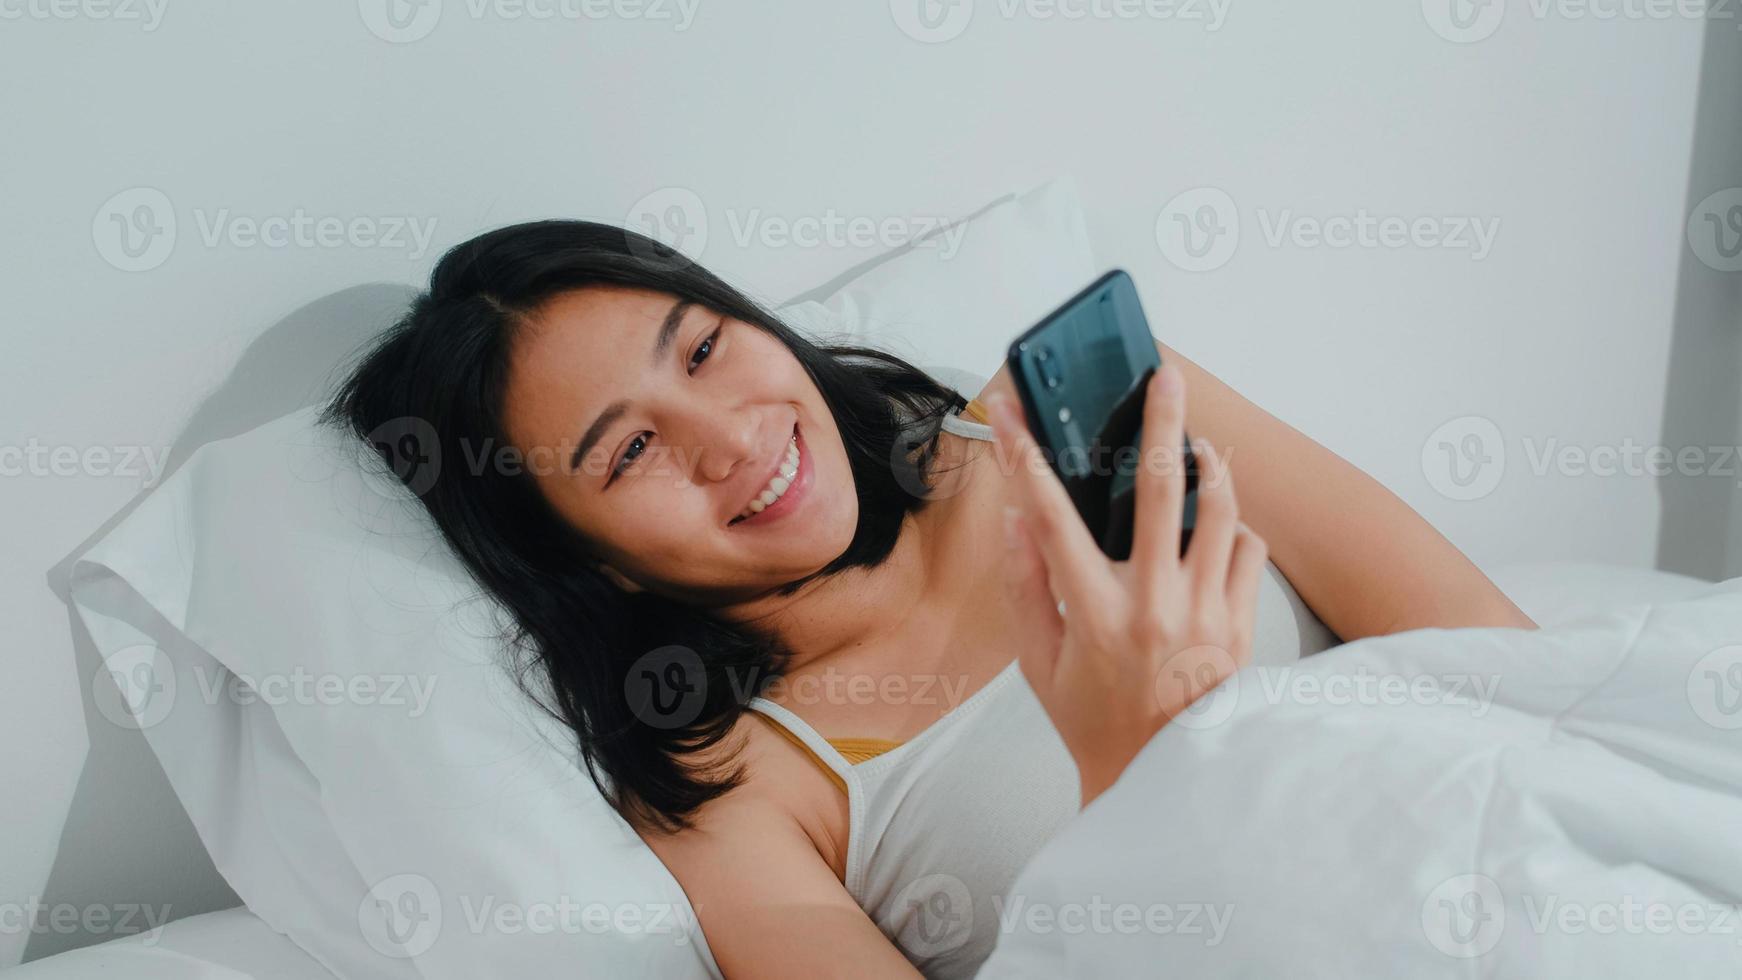 giovane donna asiatica che usa lo smartphone controllando i social media sentendosi felice sorridente mentre si trova sul letto dopo essersi svegliata al mattino, bella attraente signora ispanica sorridente si rilassa in camera da letto a casa. foto